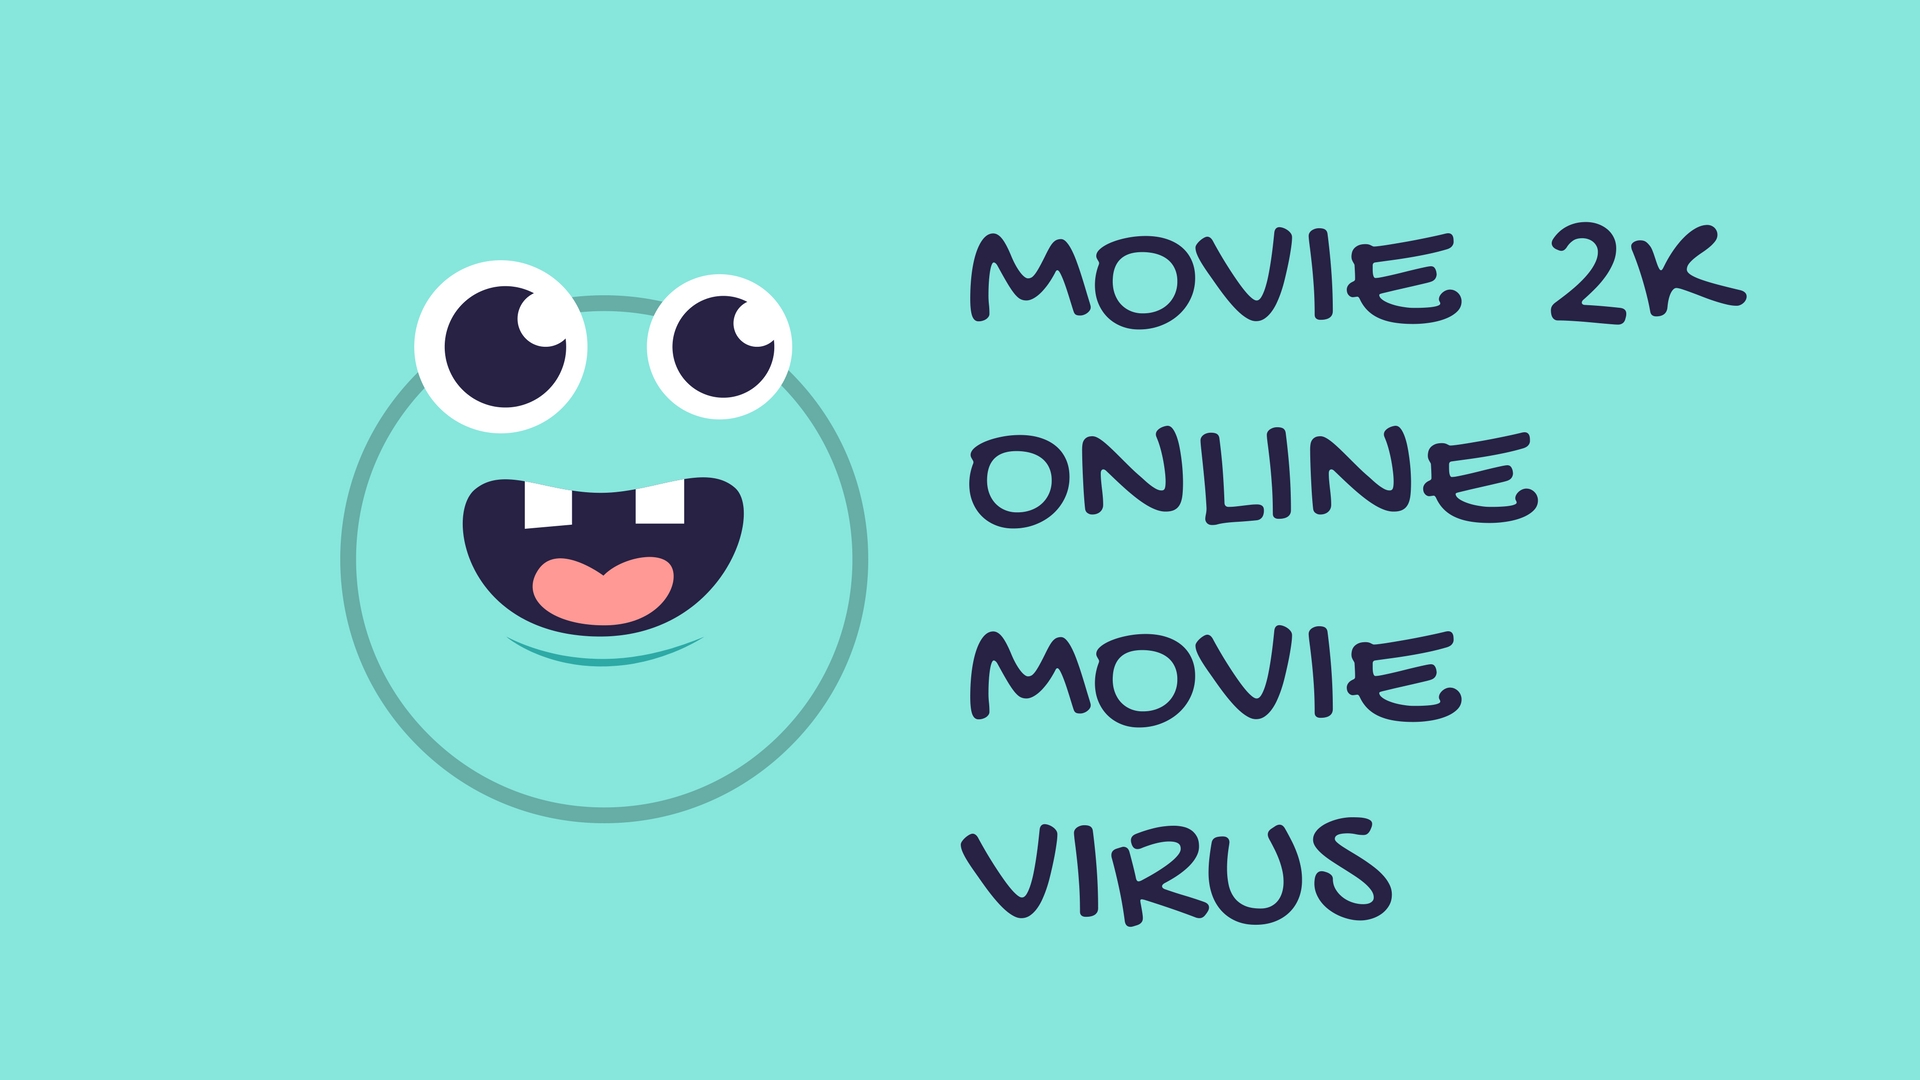 Movie 2k Online Movie Virus